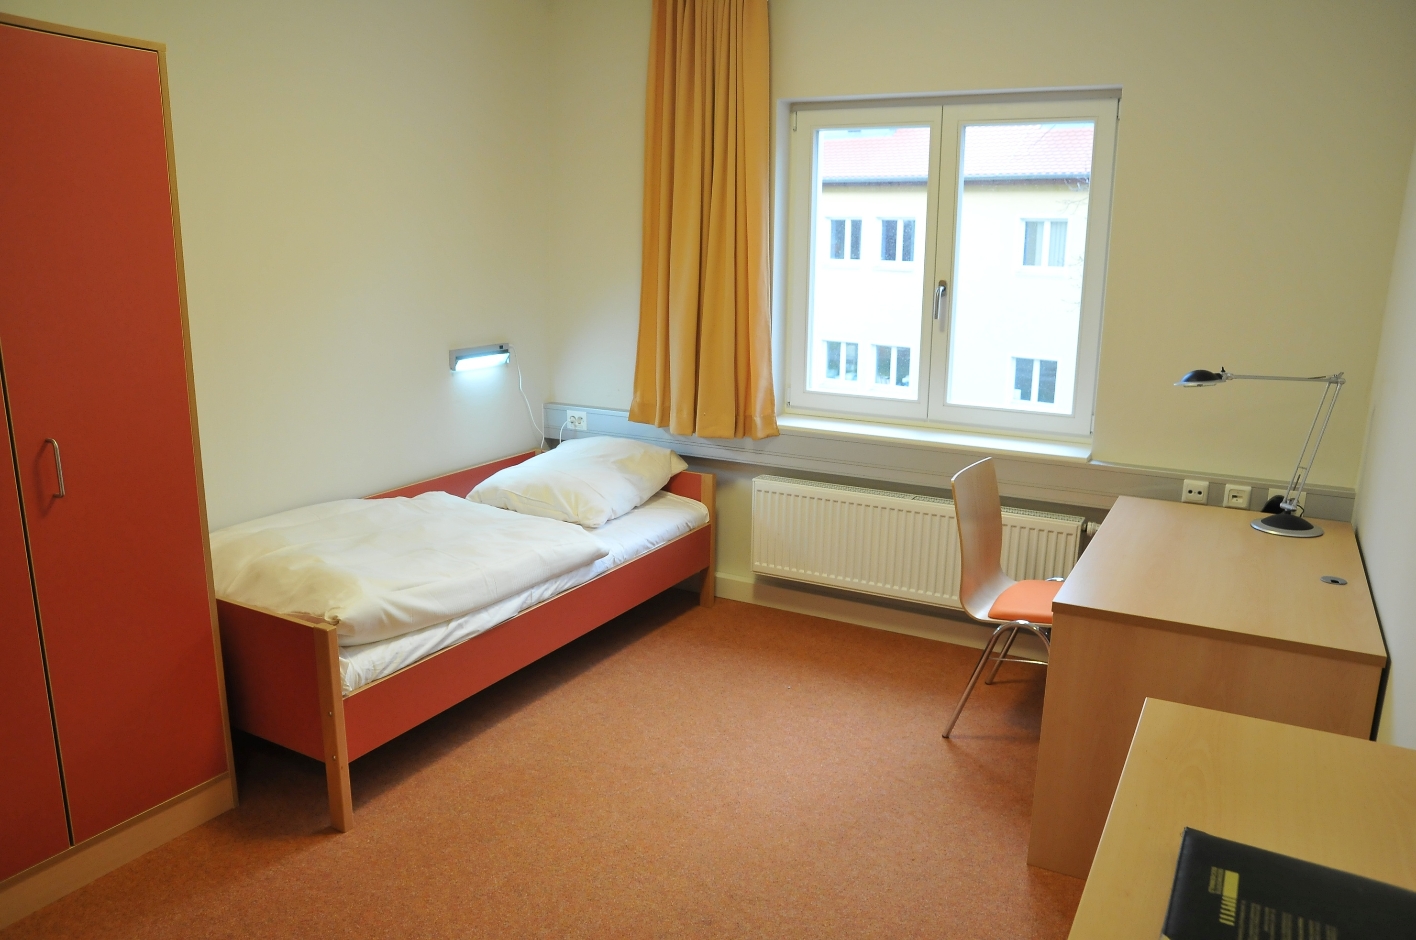 Ein Gästezimmer in der Internationalen Jugendbegegnungsstätte der Gedenkstätte Buchenwald. Links steht ein Schrank, daneben ein Einzelbett, dann kommt ein Fenster. An der gegenüberliegenden Wand steht ein Schreibtisch mit einem Stuhl und ein kleinerer Schrank.